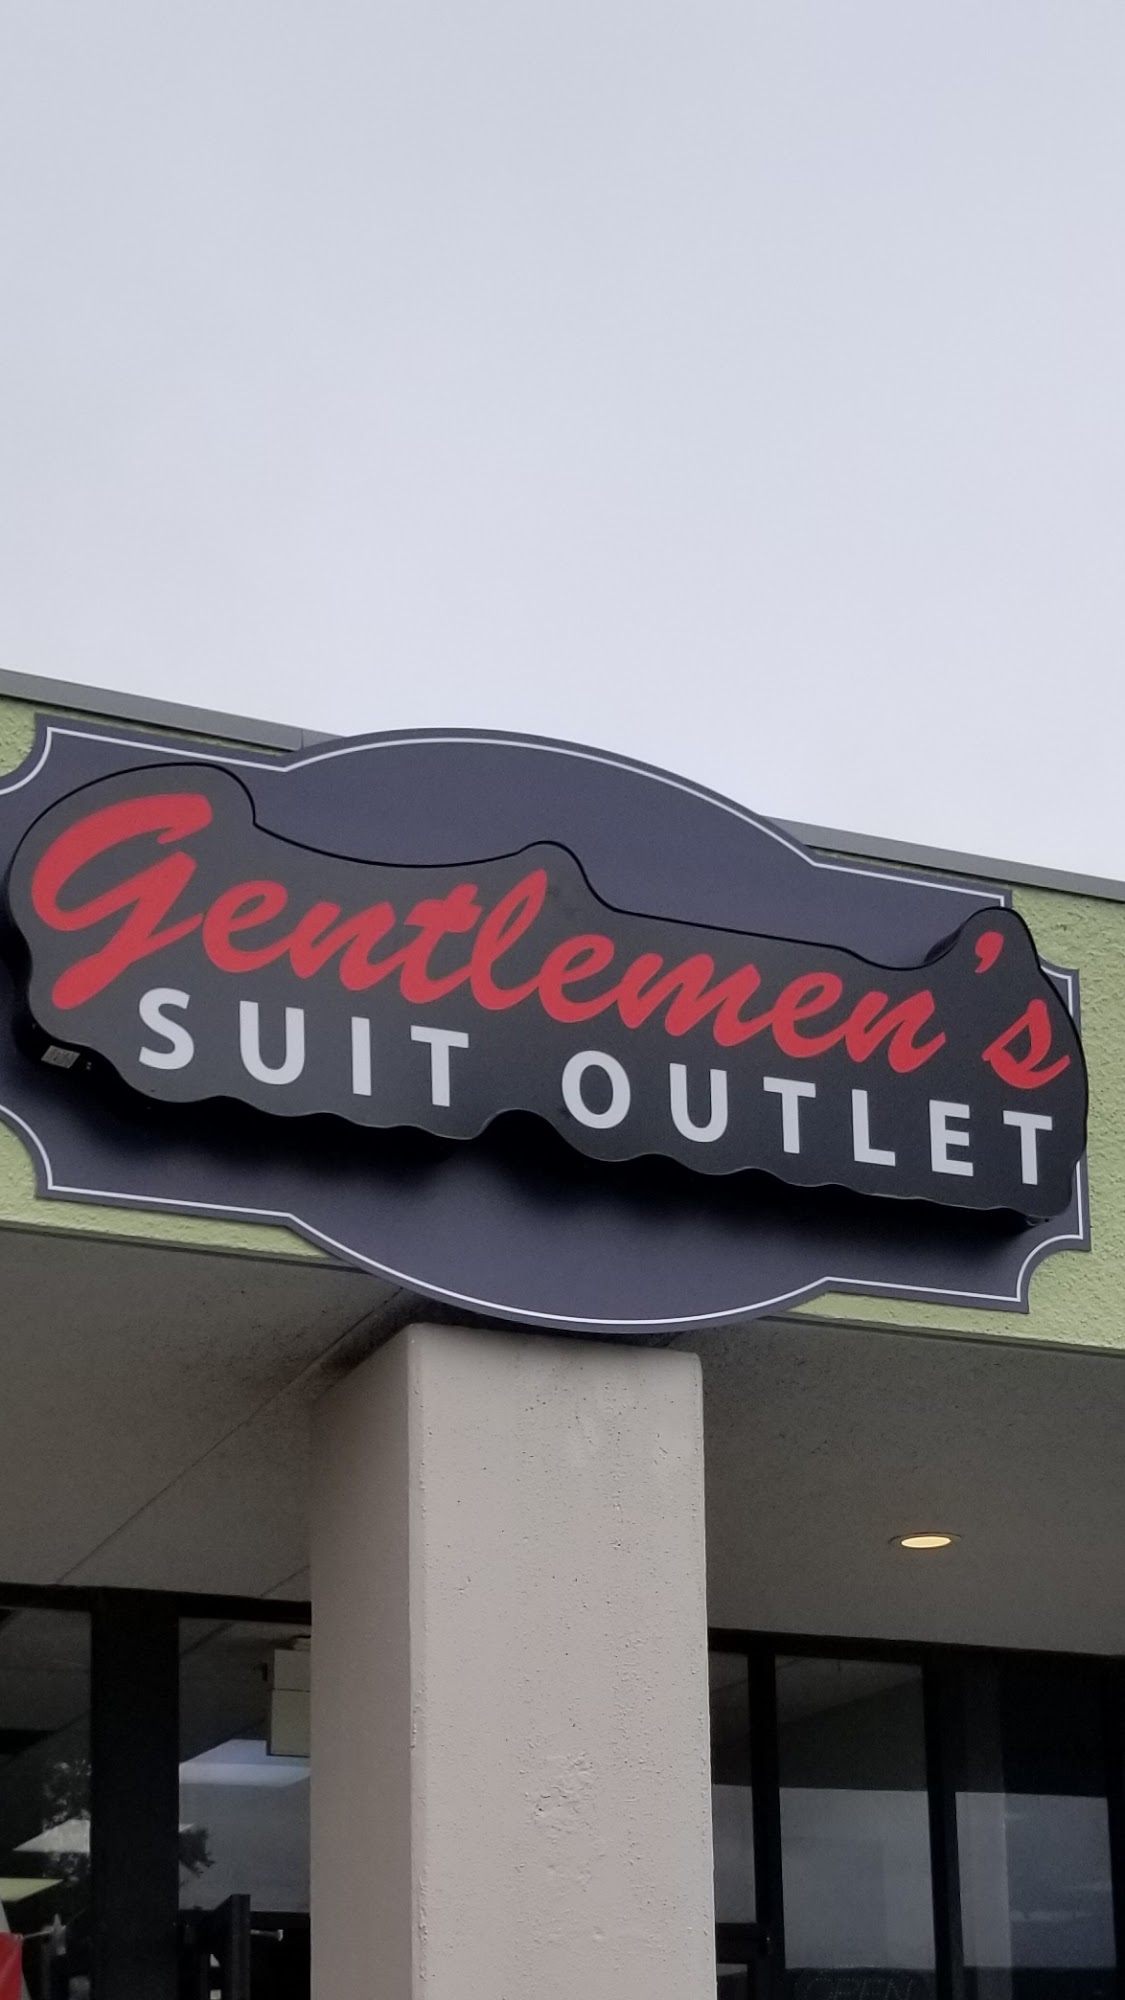 Gentlemen's suit outlet